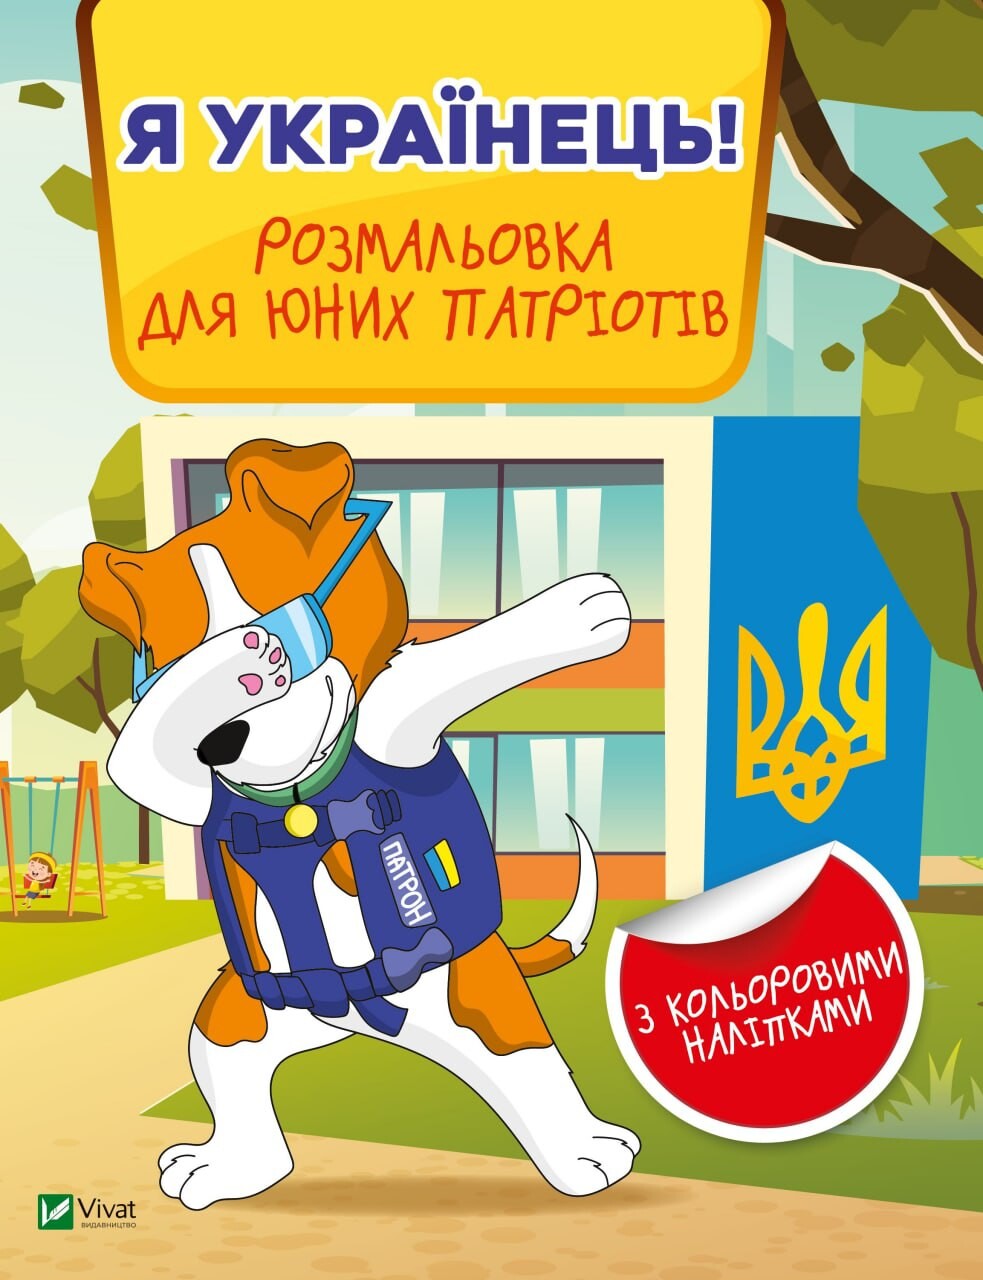 Я українець! Розмальовка для юних патріотів - Vivat